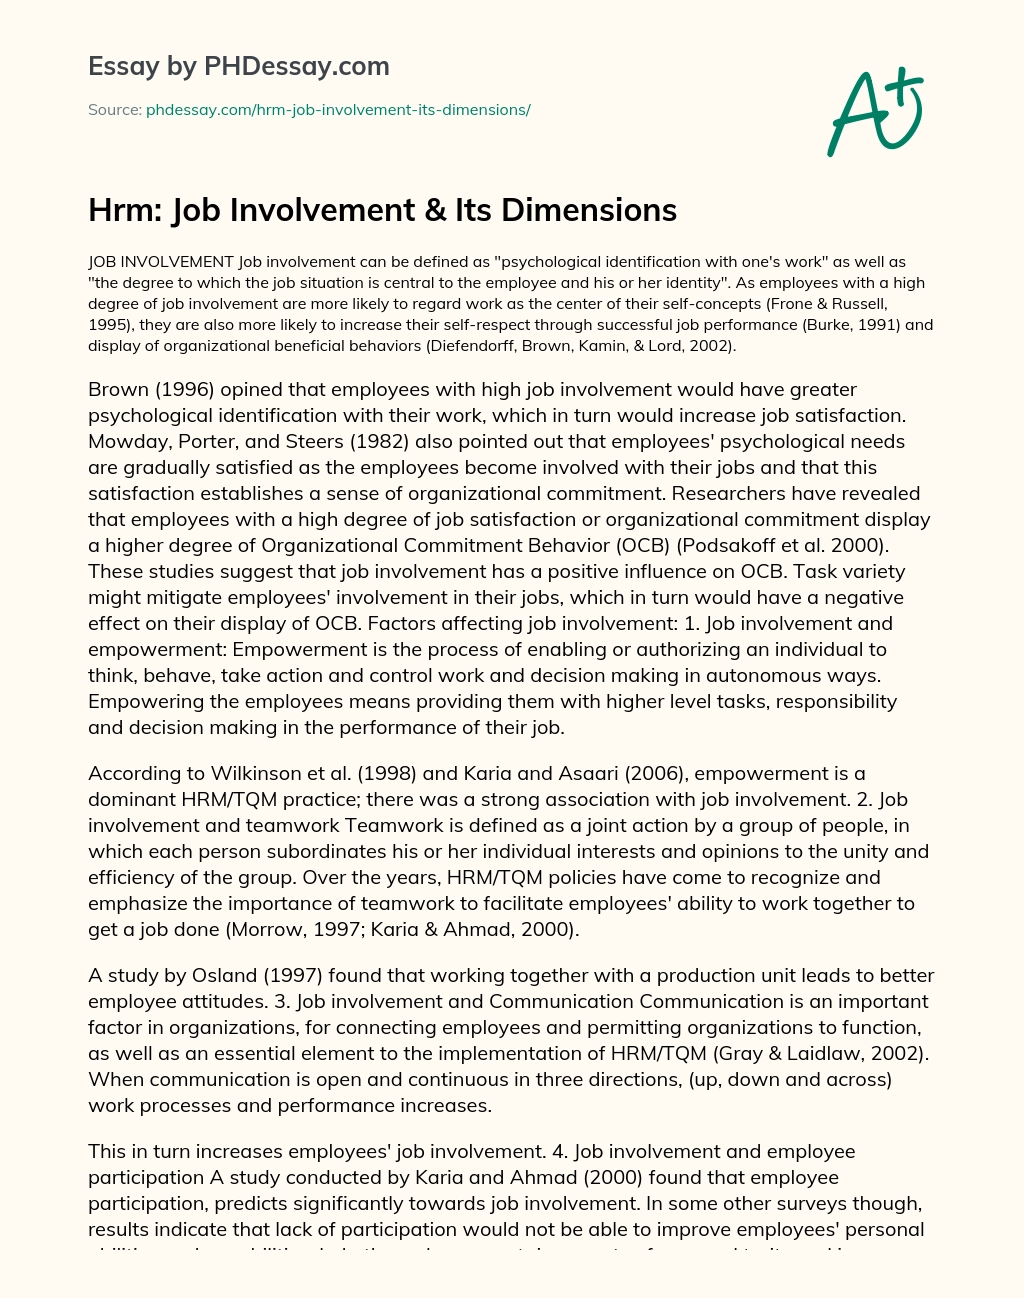 Hrm: Job Involvement & Its Dimensions essay